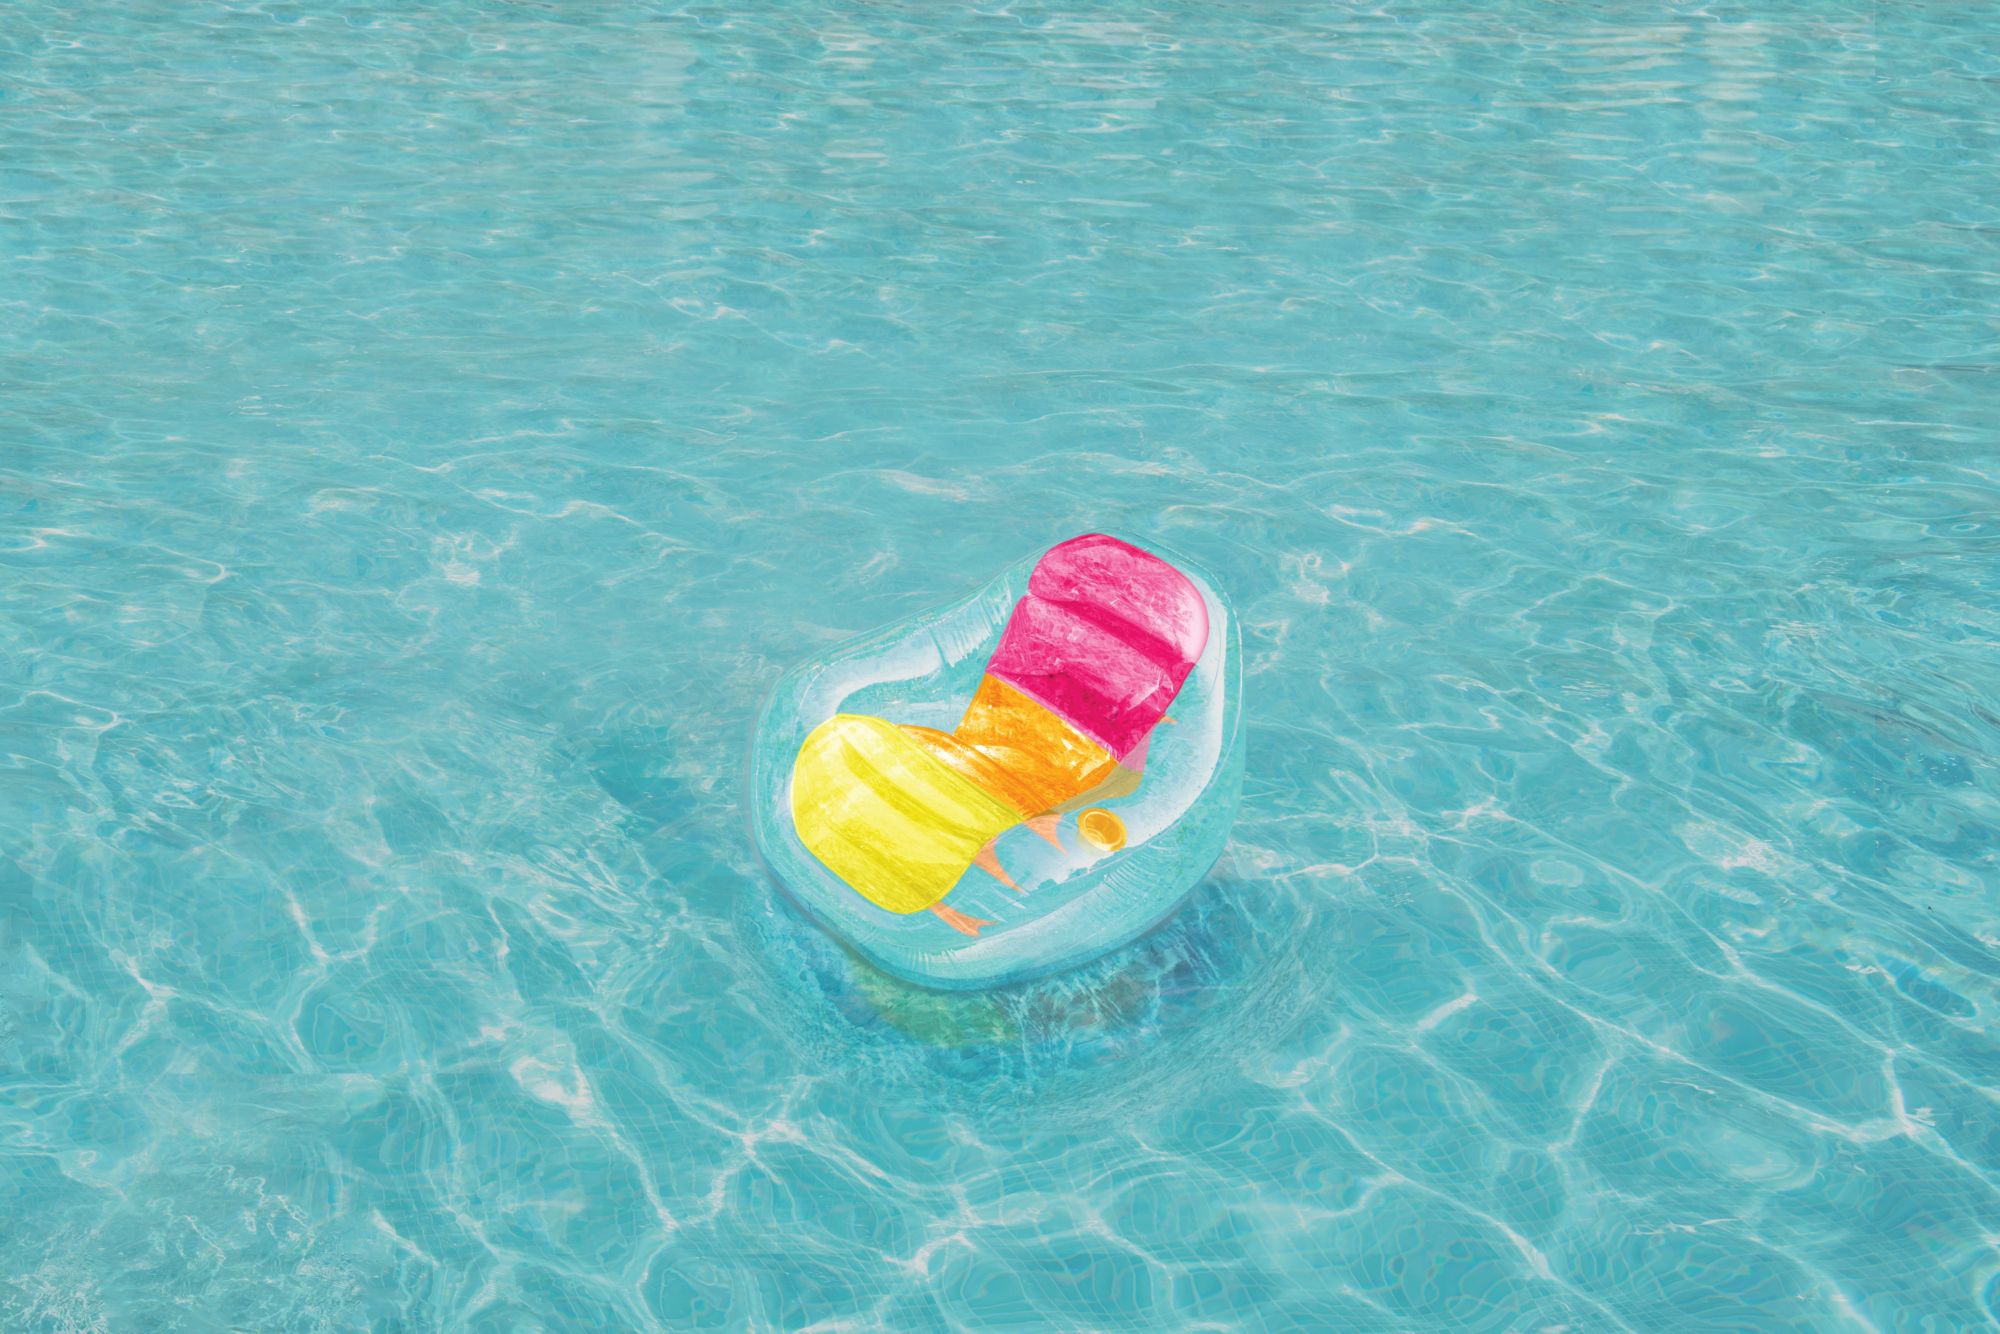 SwimWays Dry Float Socializer